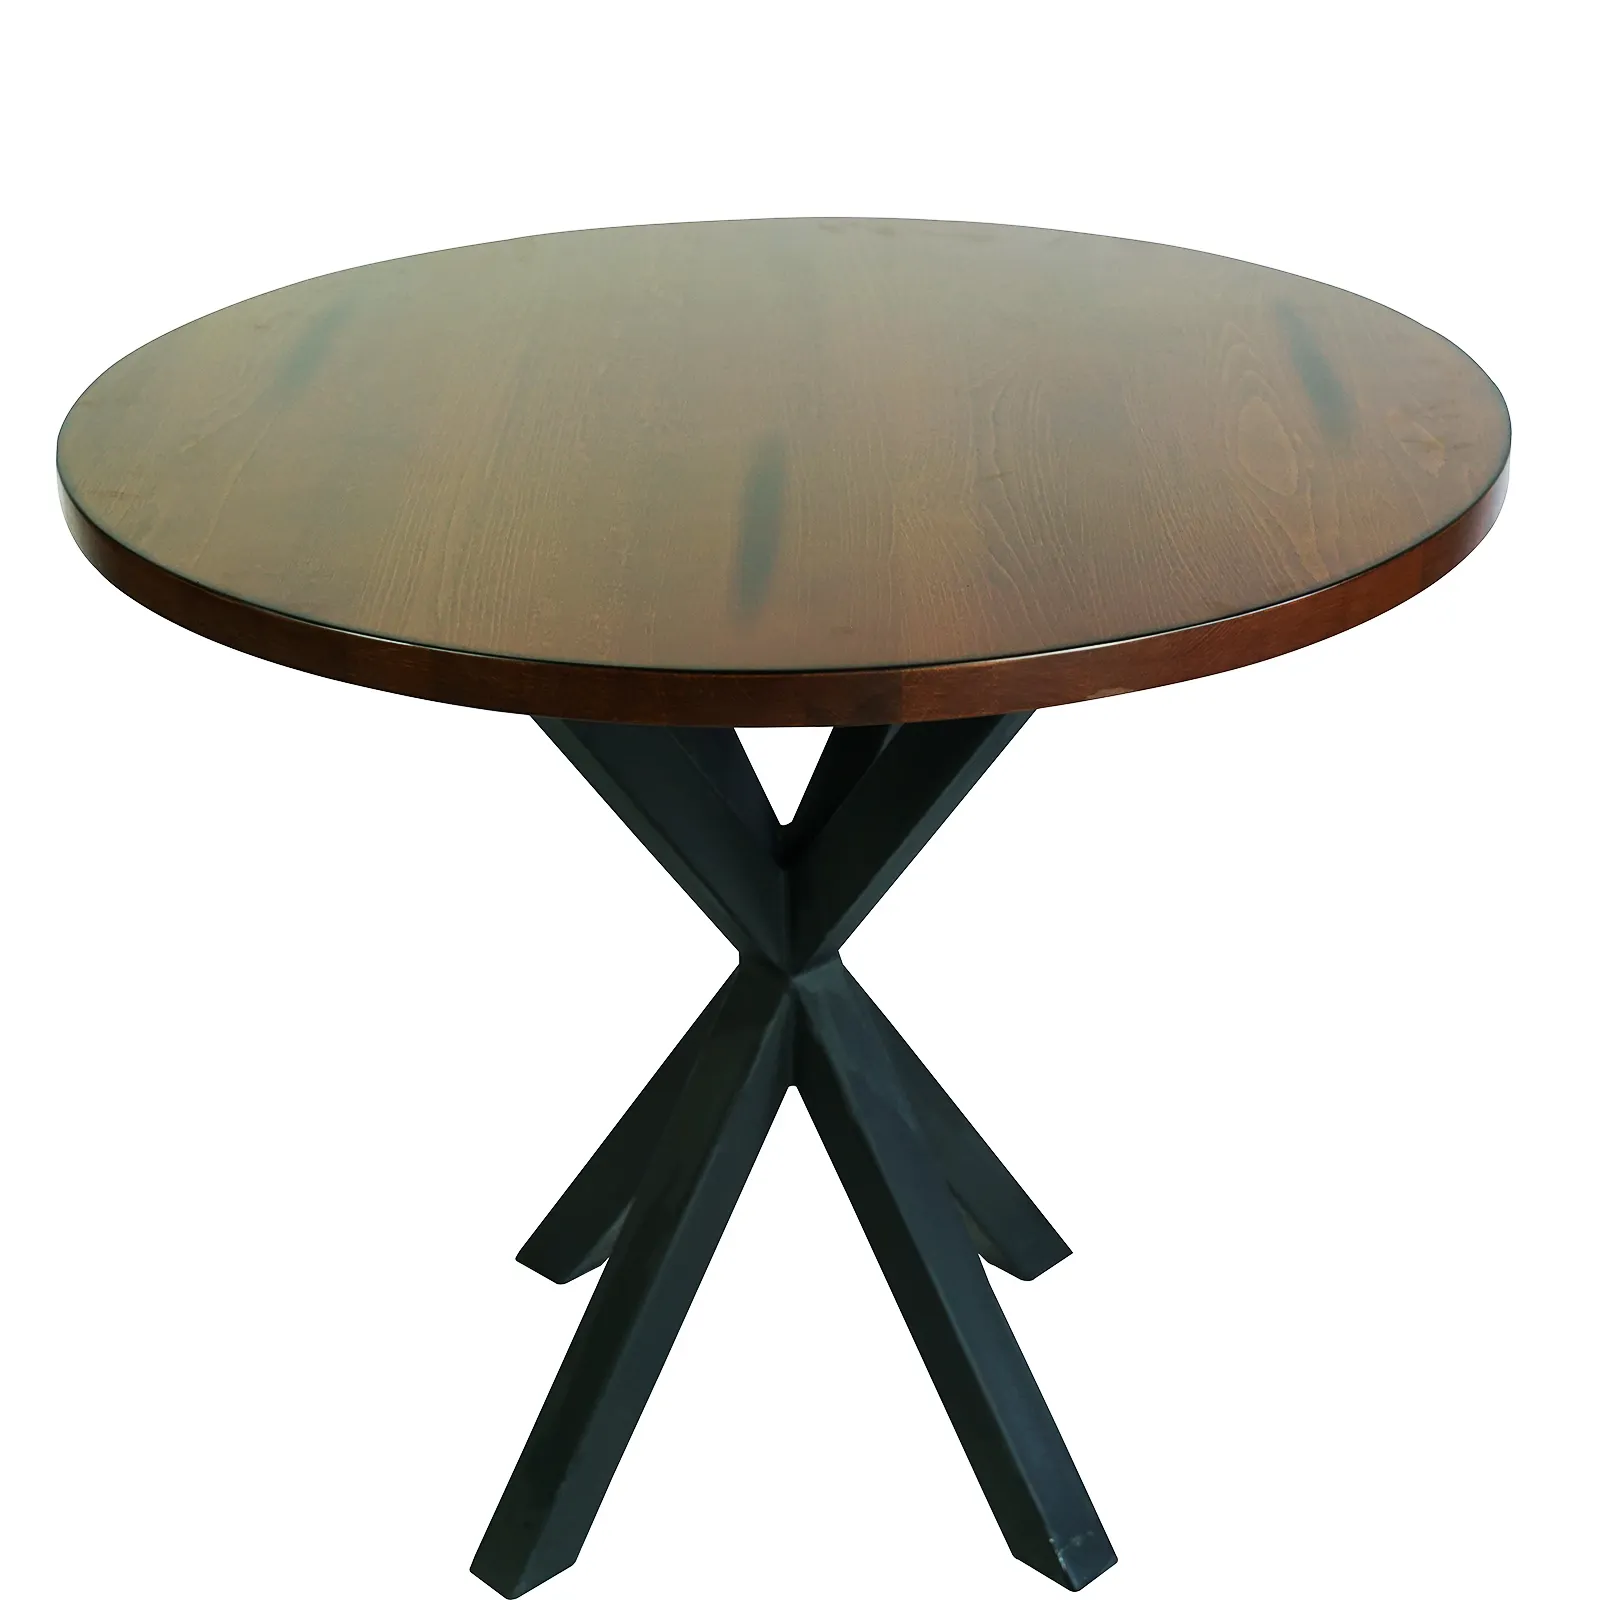 OEM/ODM tondi faggio in legno massello tavolo da pranzo top ristorante piani personalizzati 30x30x1,25 pollici